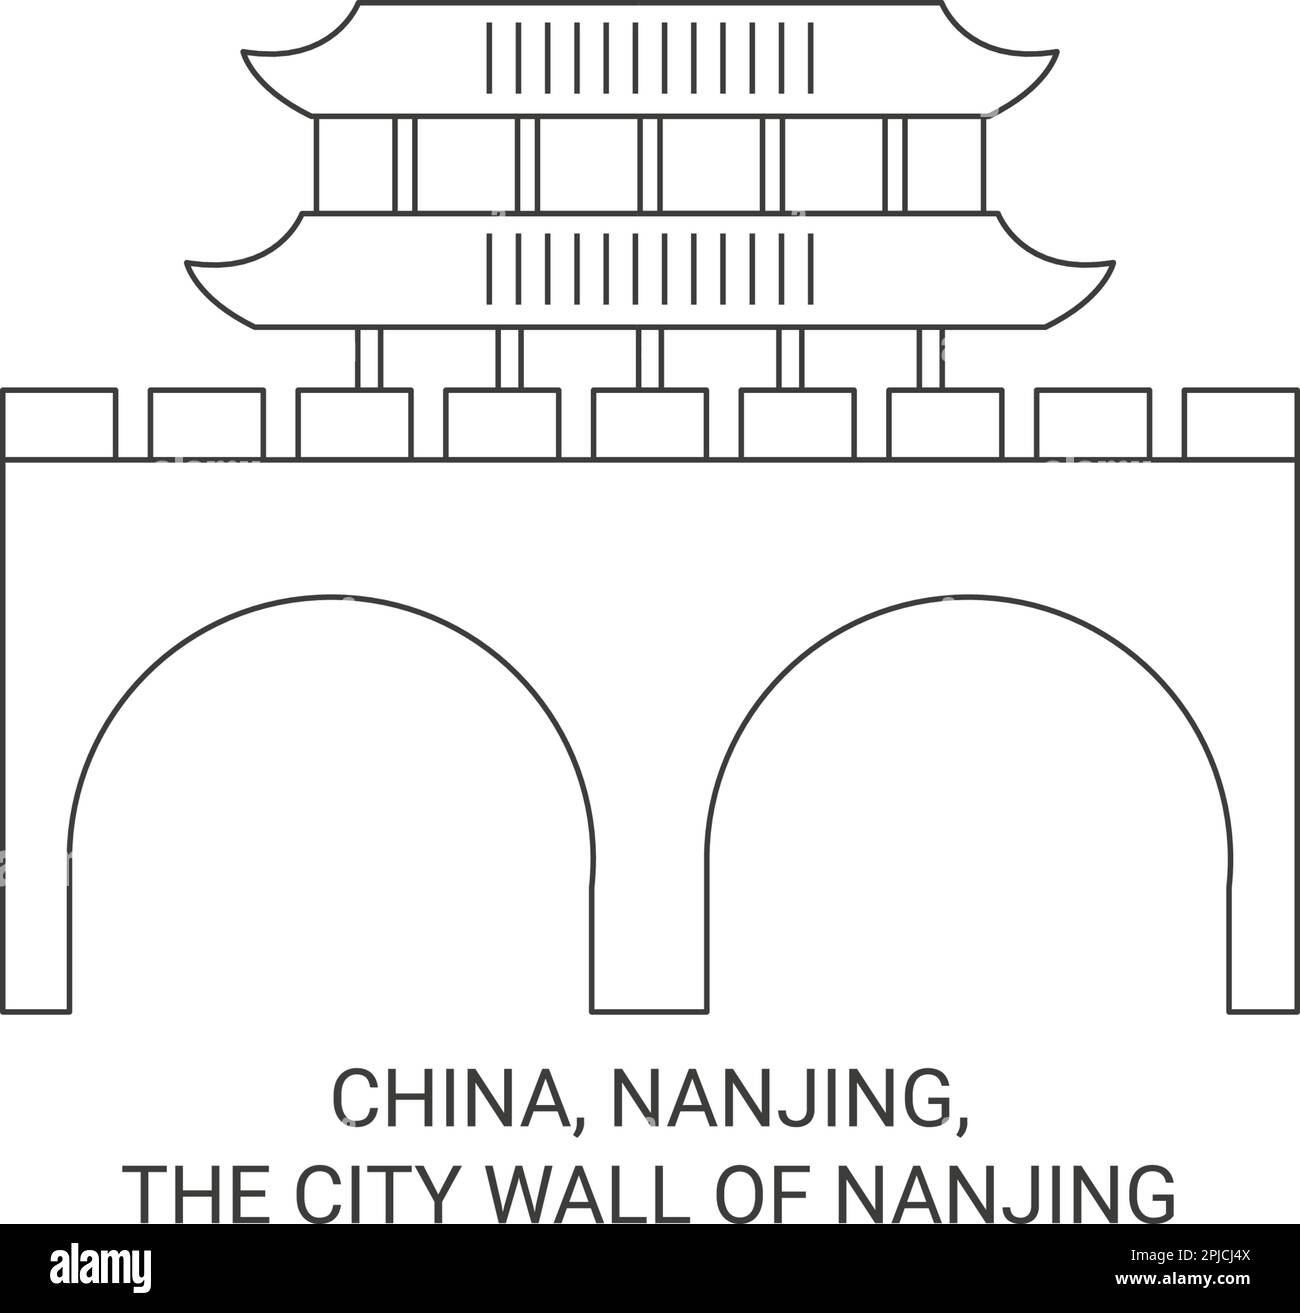 China, Nanjing, The City Wall Of Nanjing travel landmark vector illustration Stock Vector